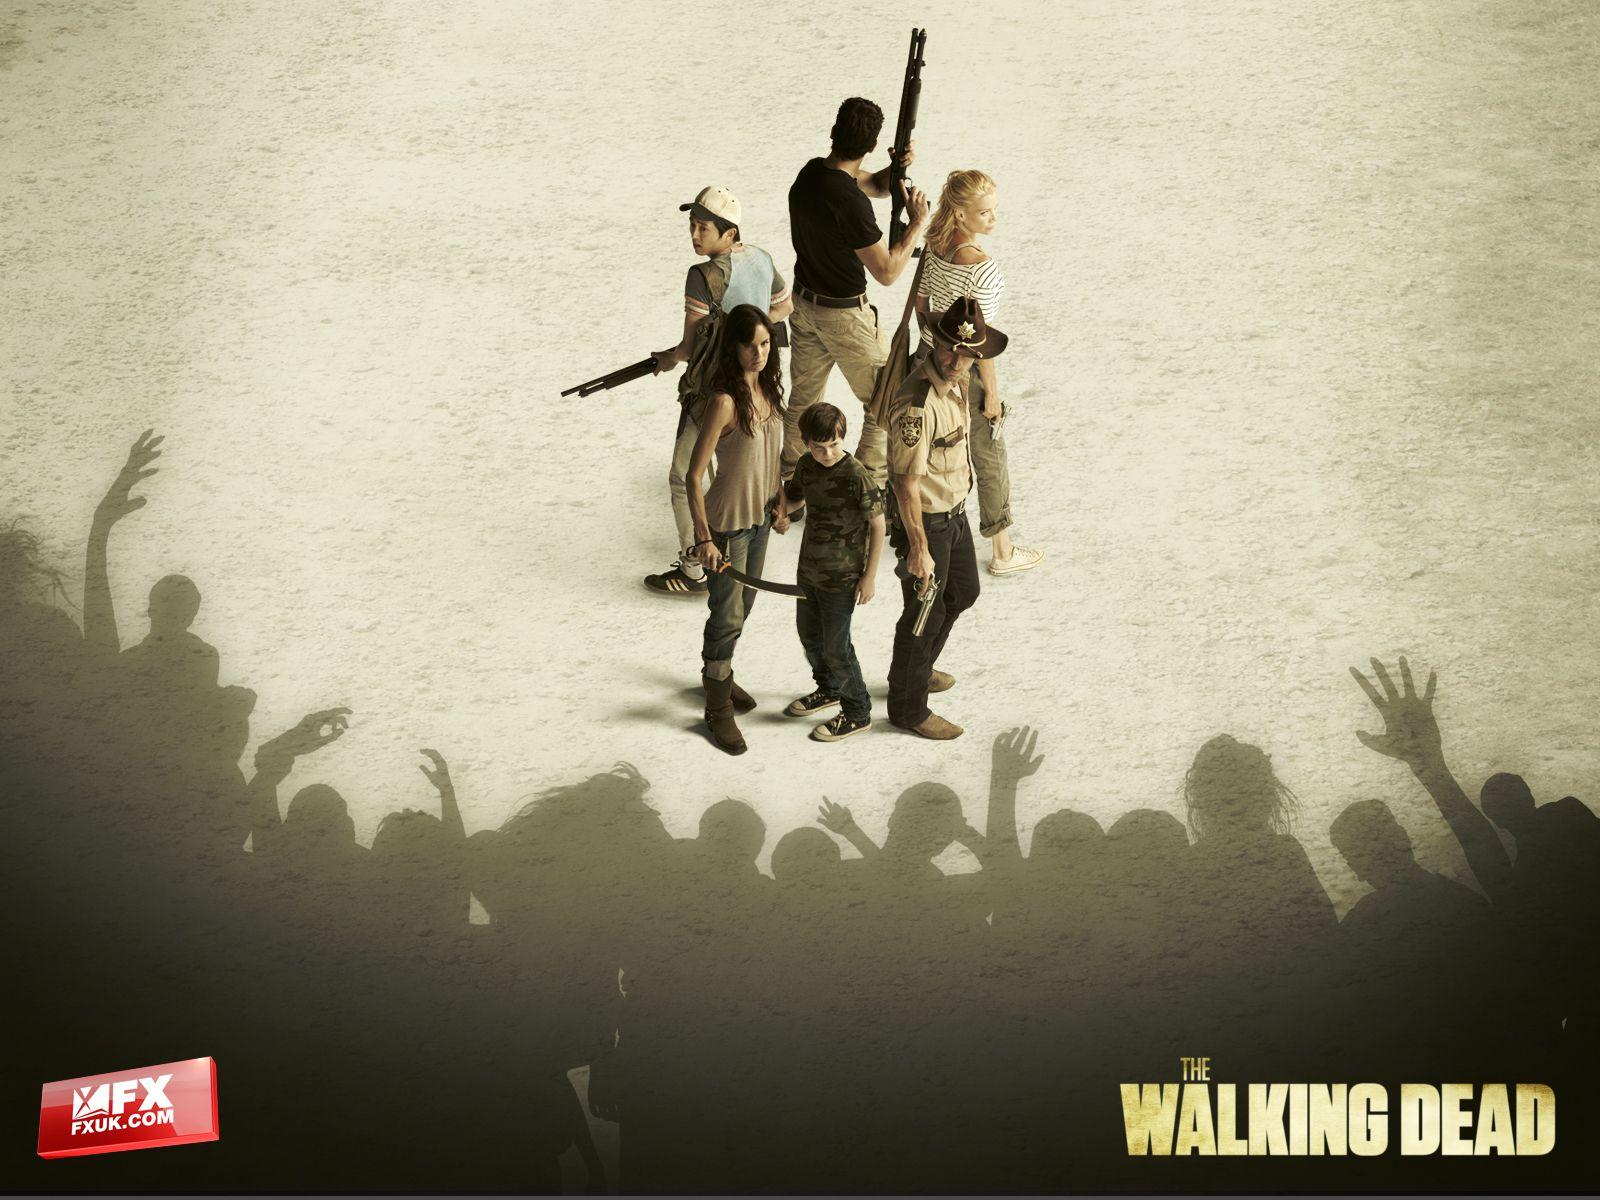 The Walking Dead HD Wallpaper for desktop download